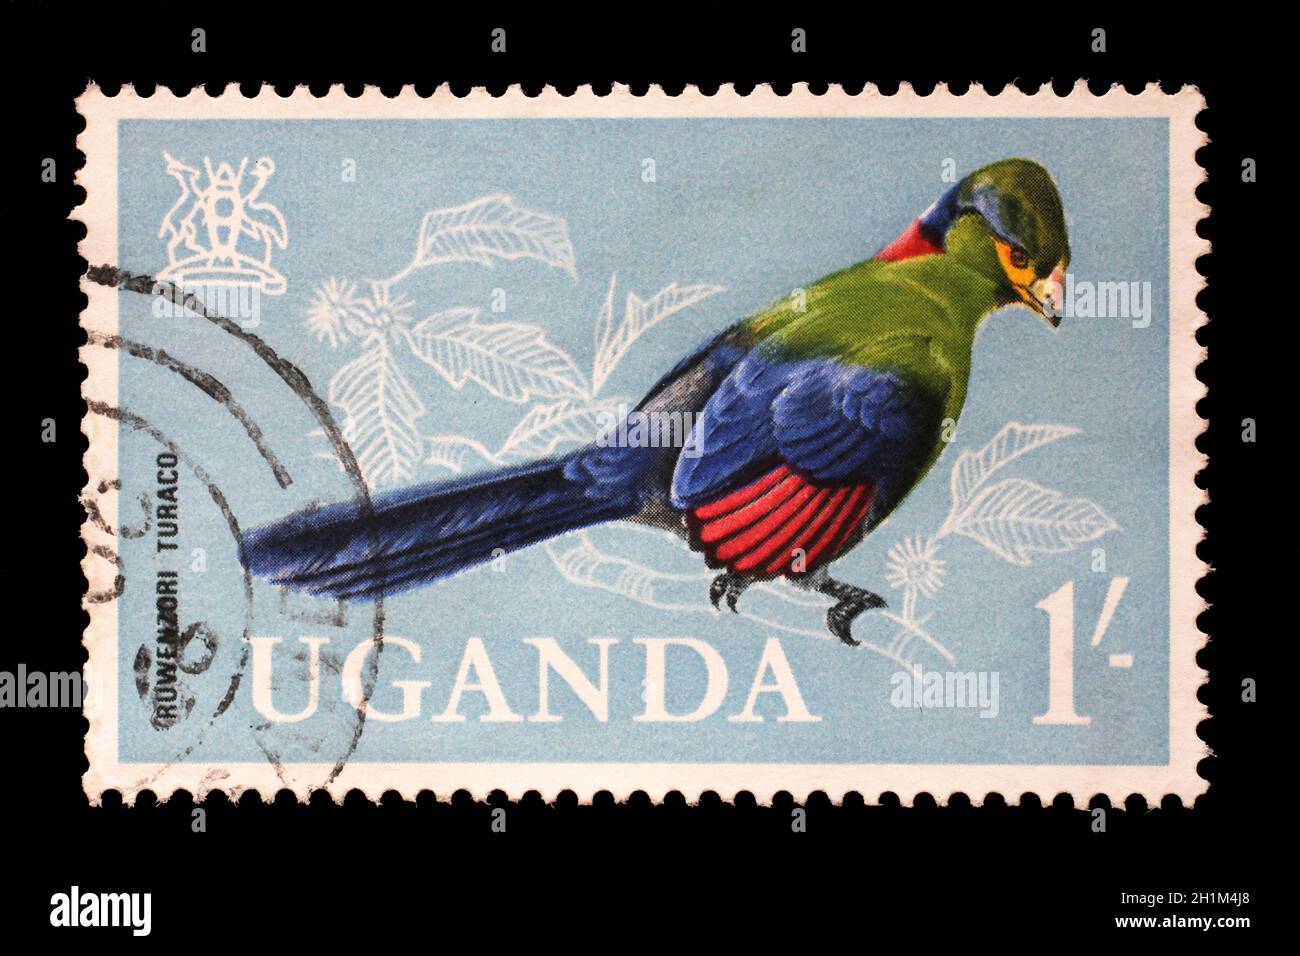 Stamp issued in Uganda shows Ruwenzori Turaco (Ruwenzorornis johnstoni), circa 1965. Stock Photo